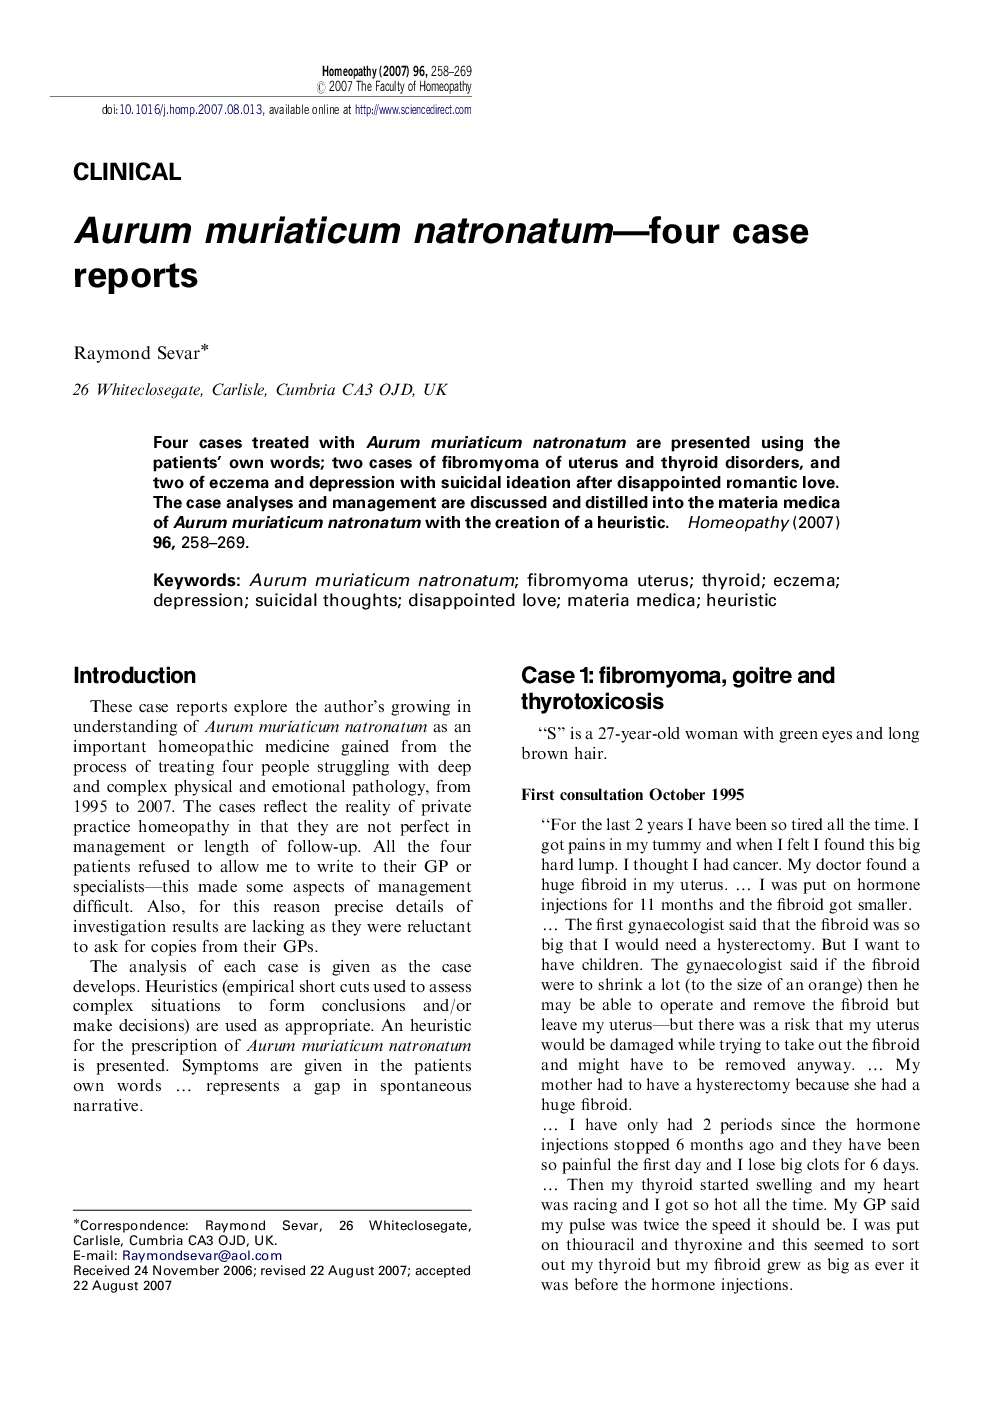 Aurum muriaticum natronatum—four case reports